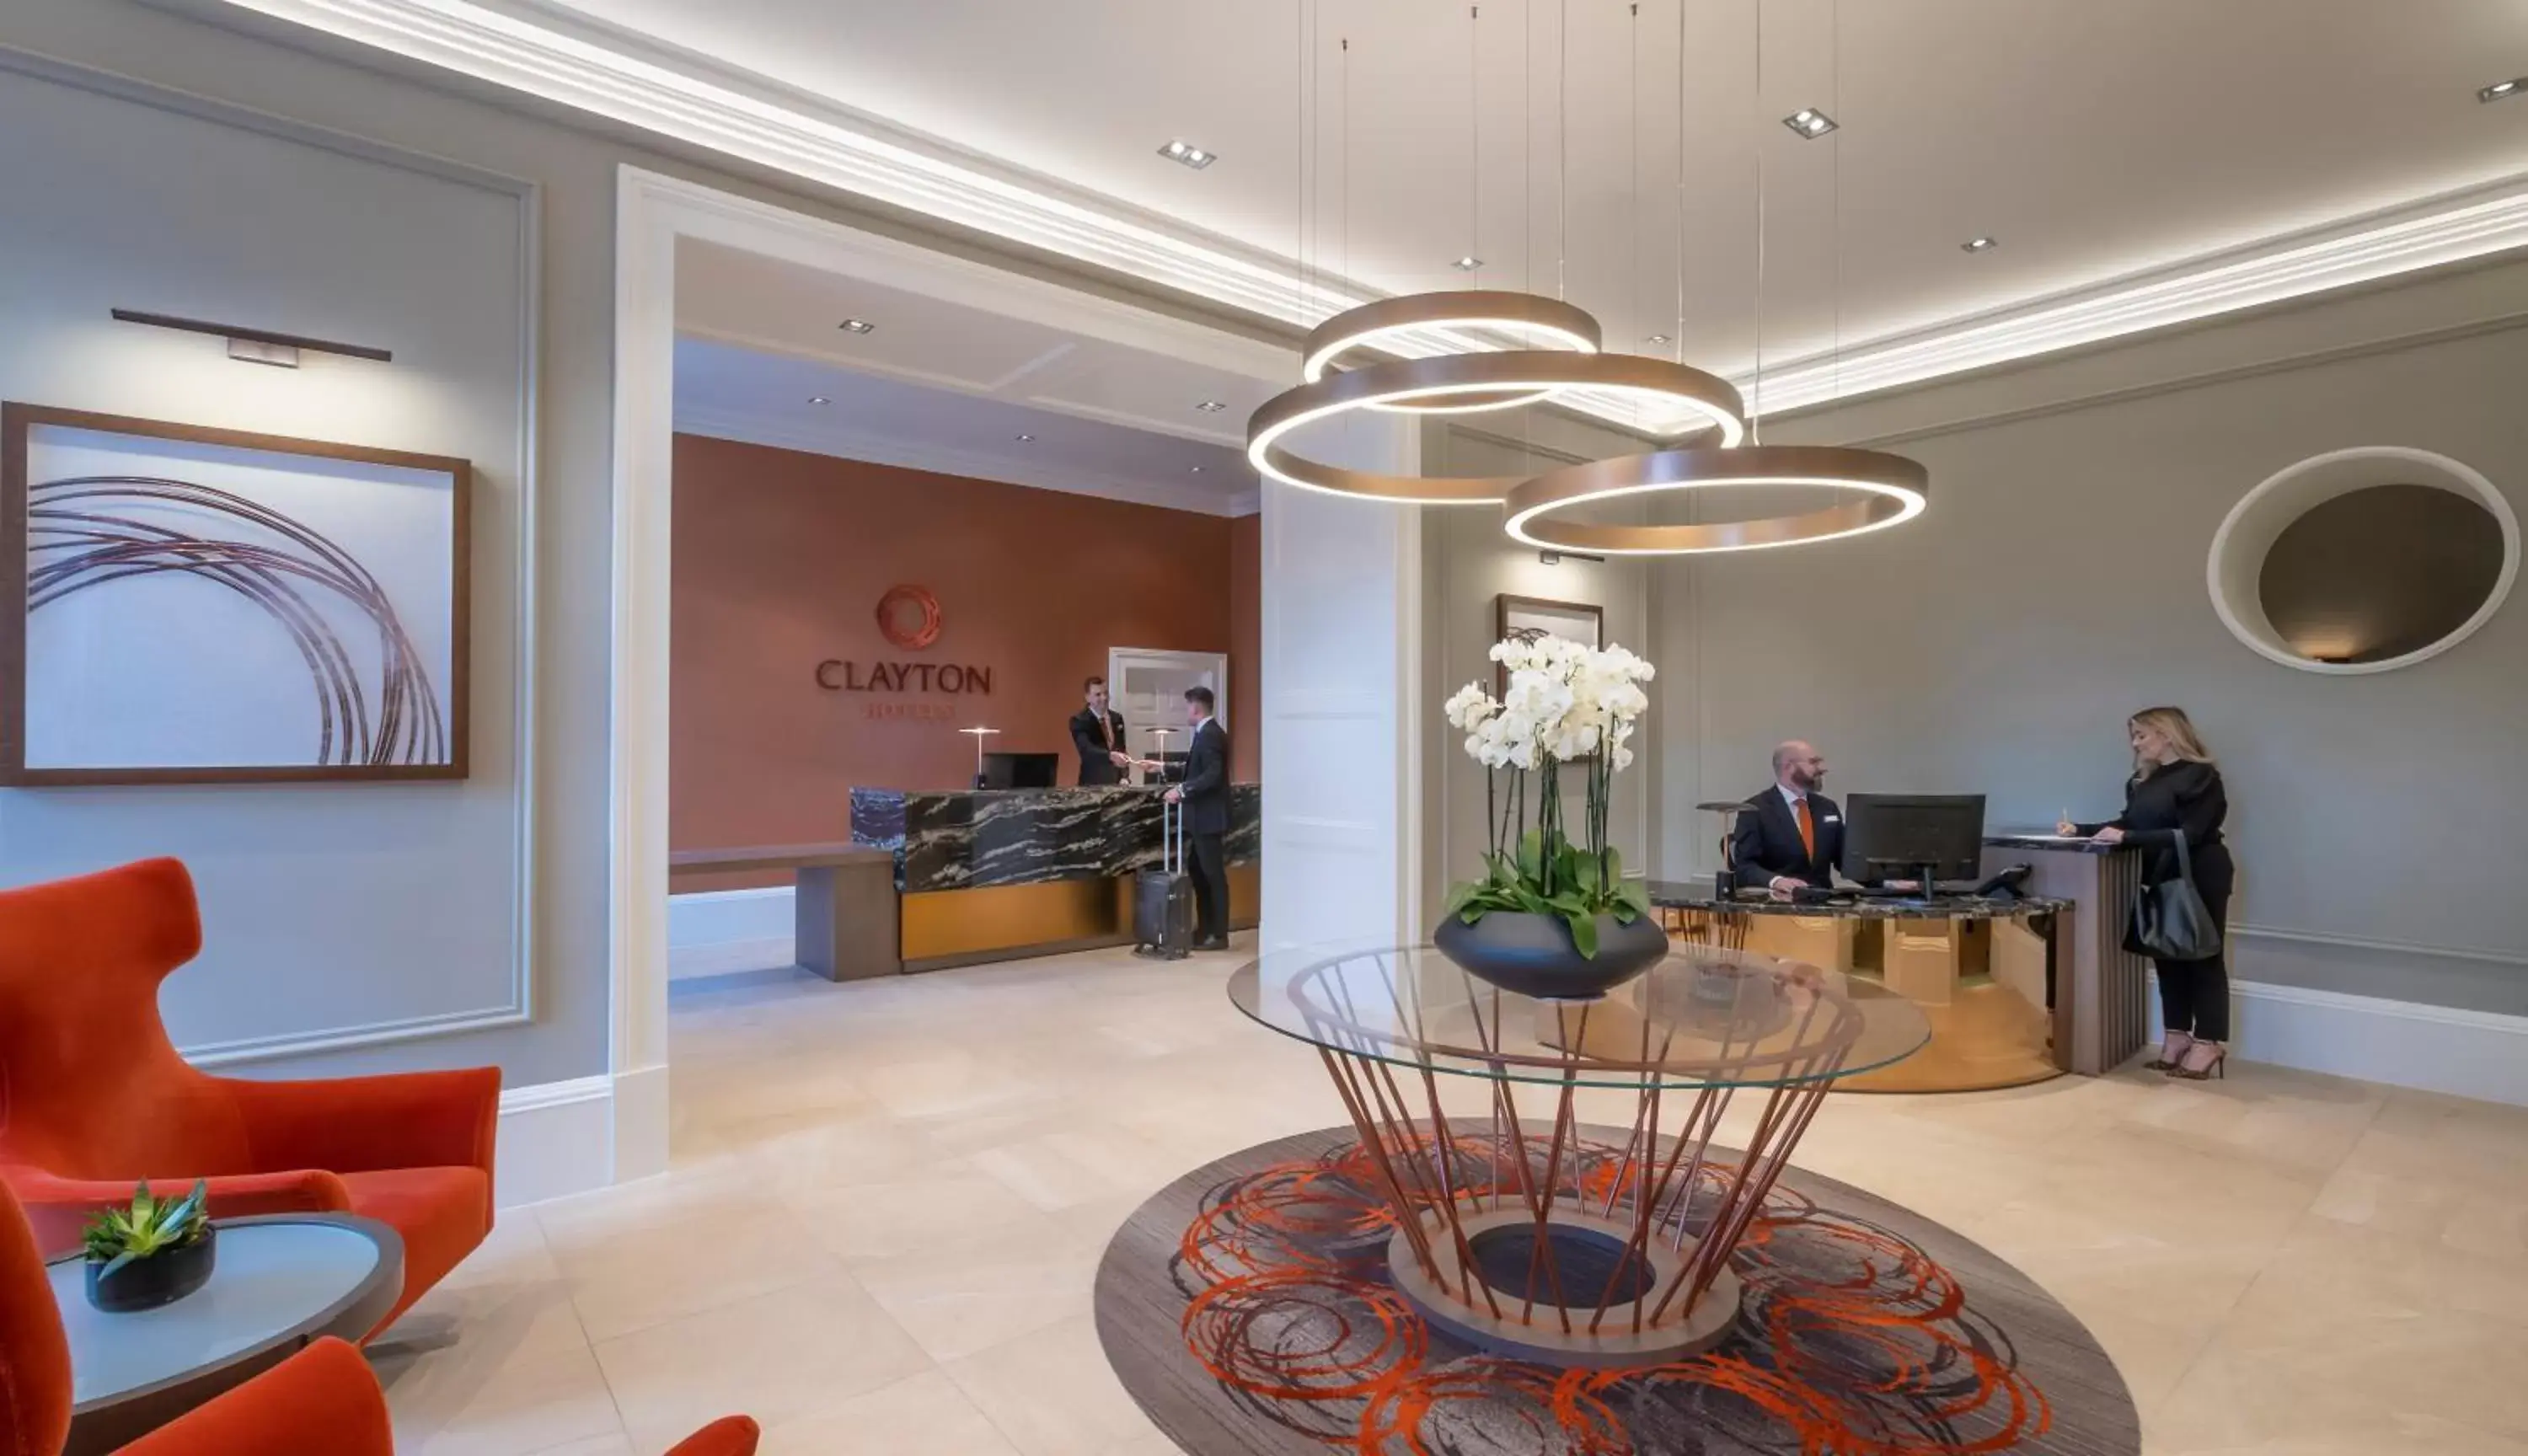 Lobby or reception, Lobby/Reception in Clayton Hotel Glasgow City